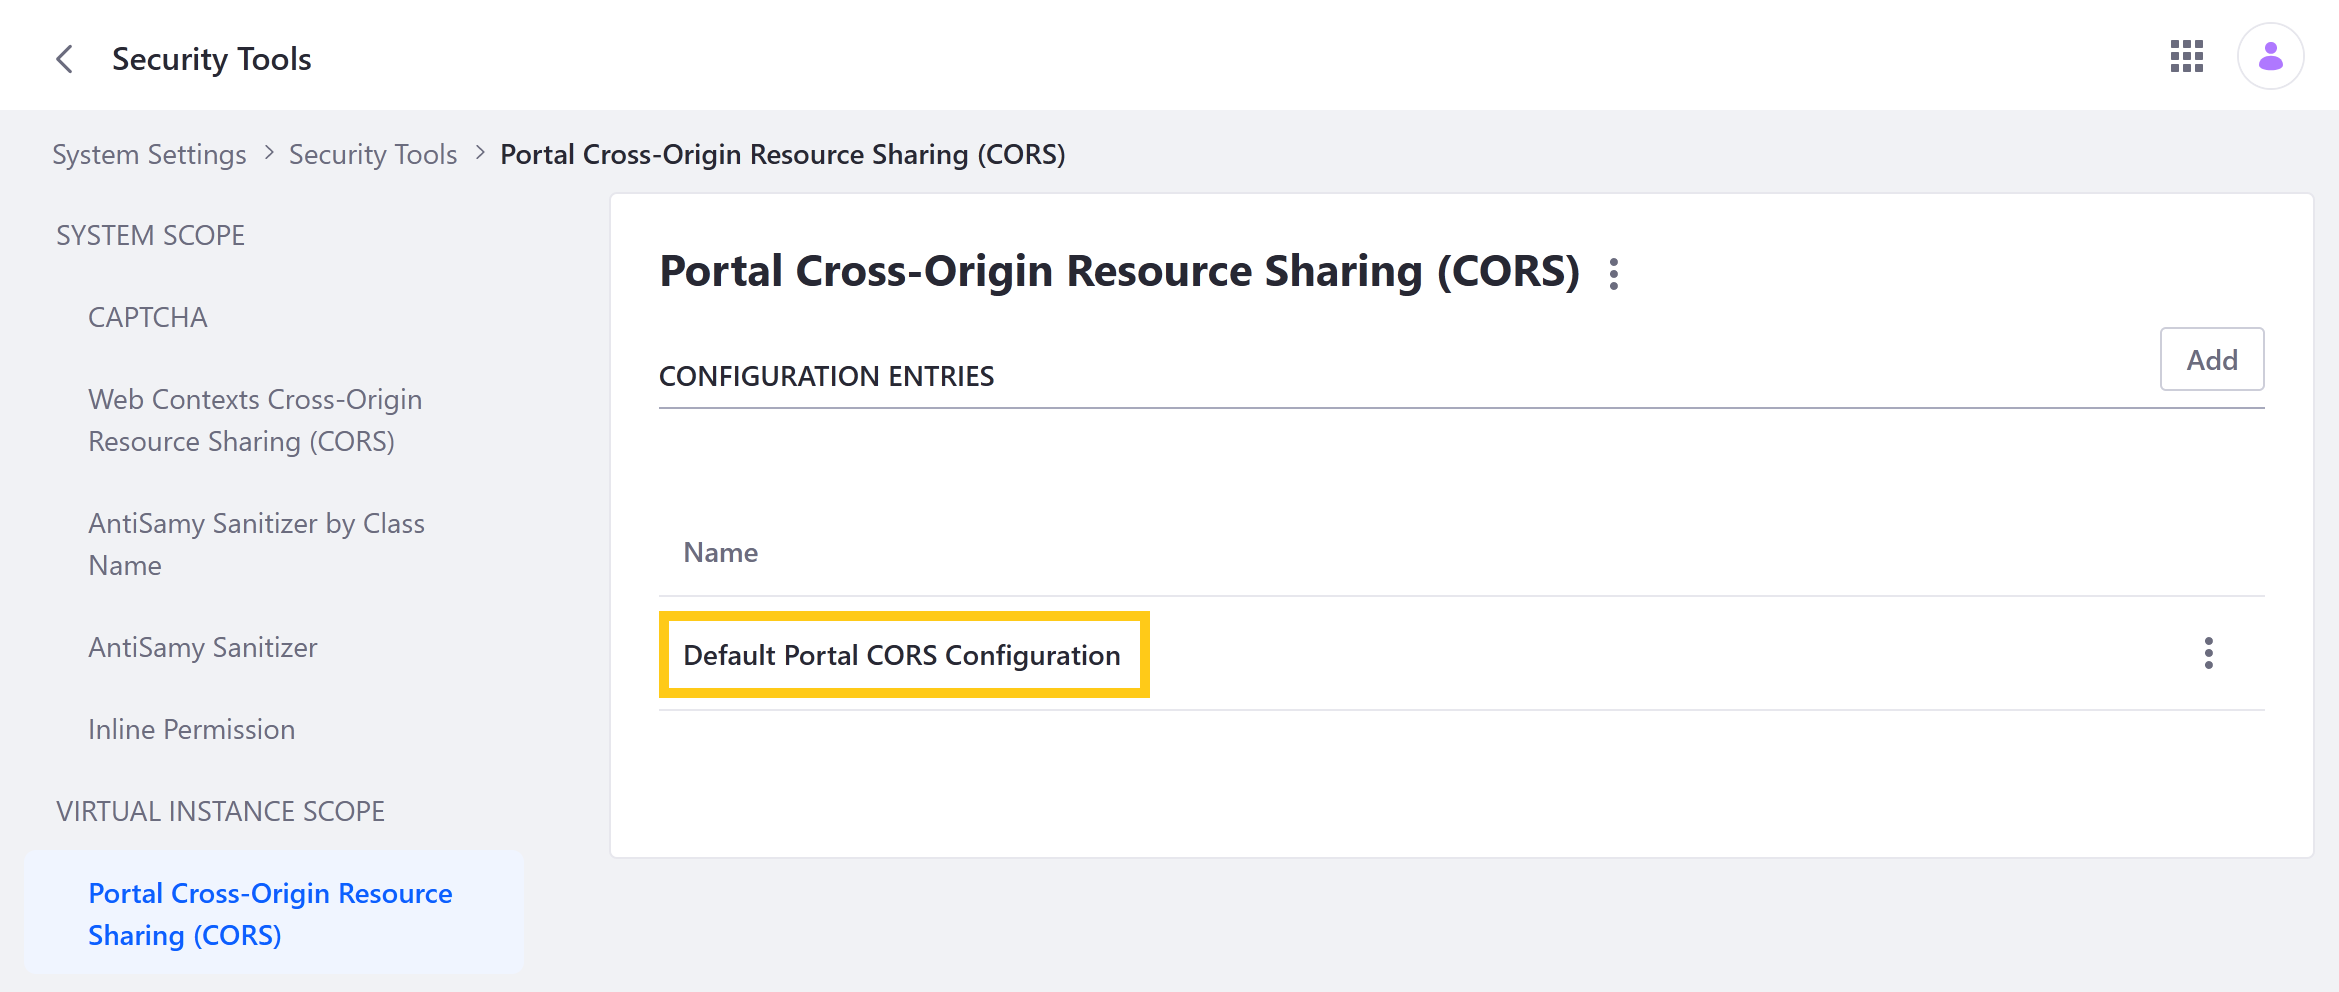 Click Default Portal CORS Configuration